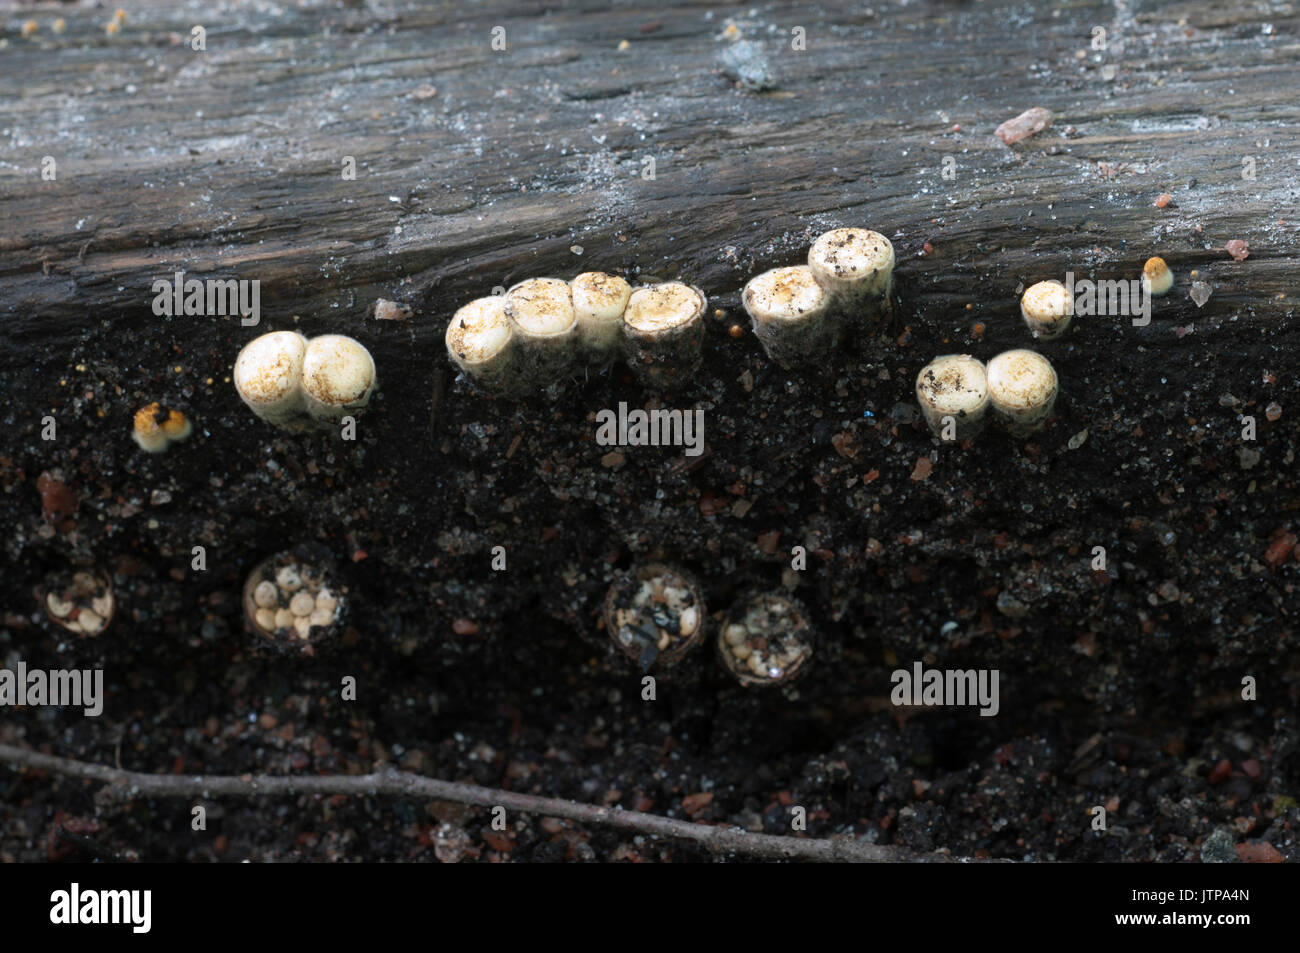 Crucibulum laeve mushrooms on the wood Stock Photo